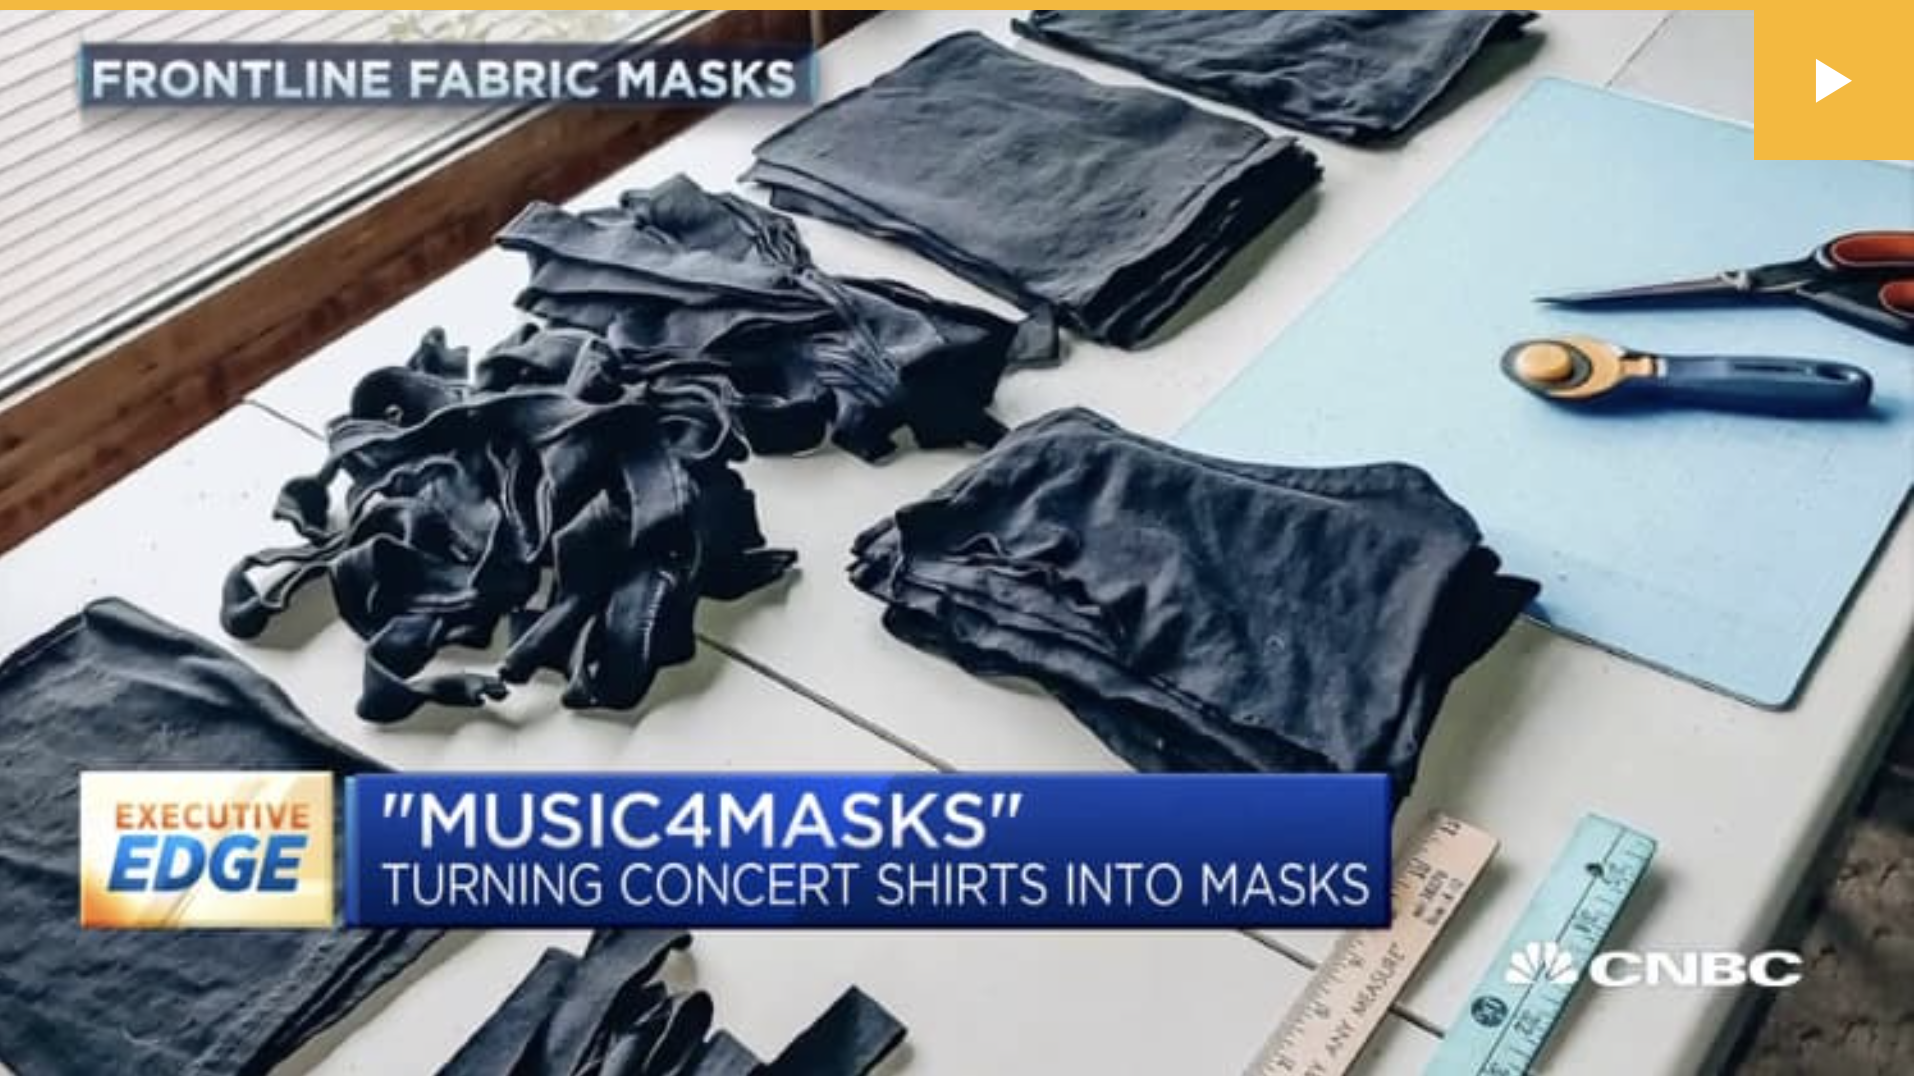 Musicians, music fans repurpose unsold tour t-shirts into masks